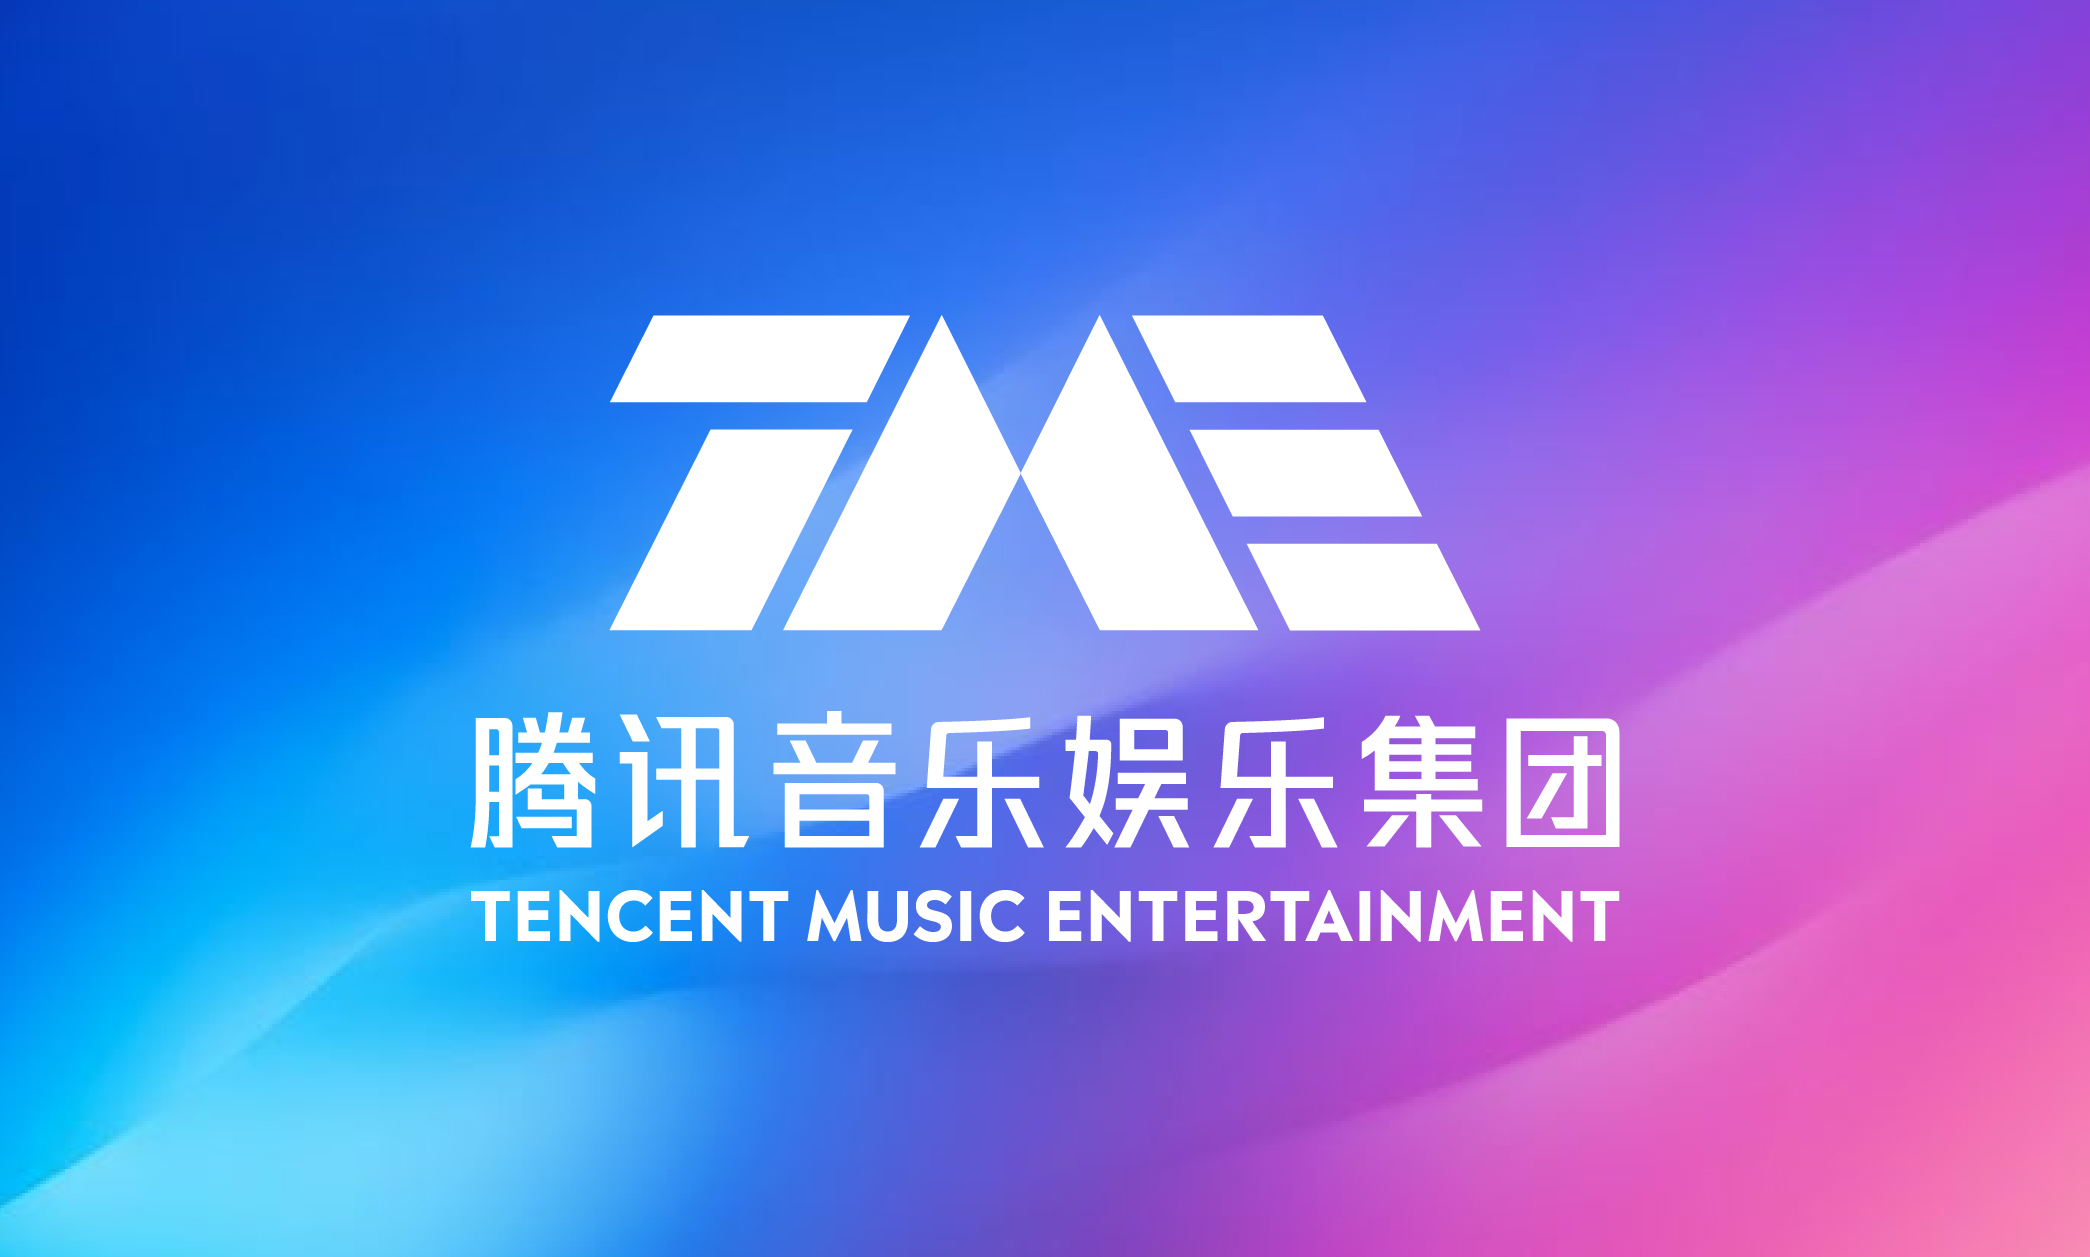 Tencent Music Entertainment Group Announces Management Change